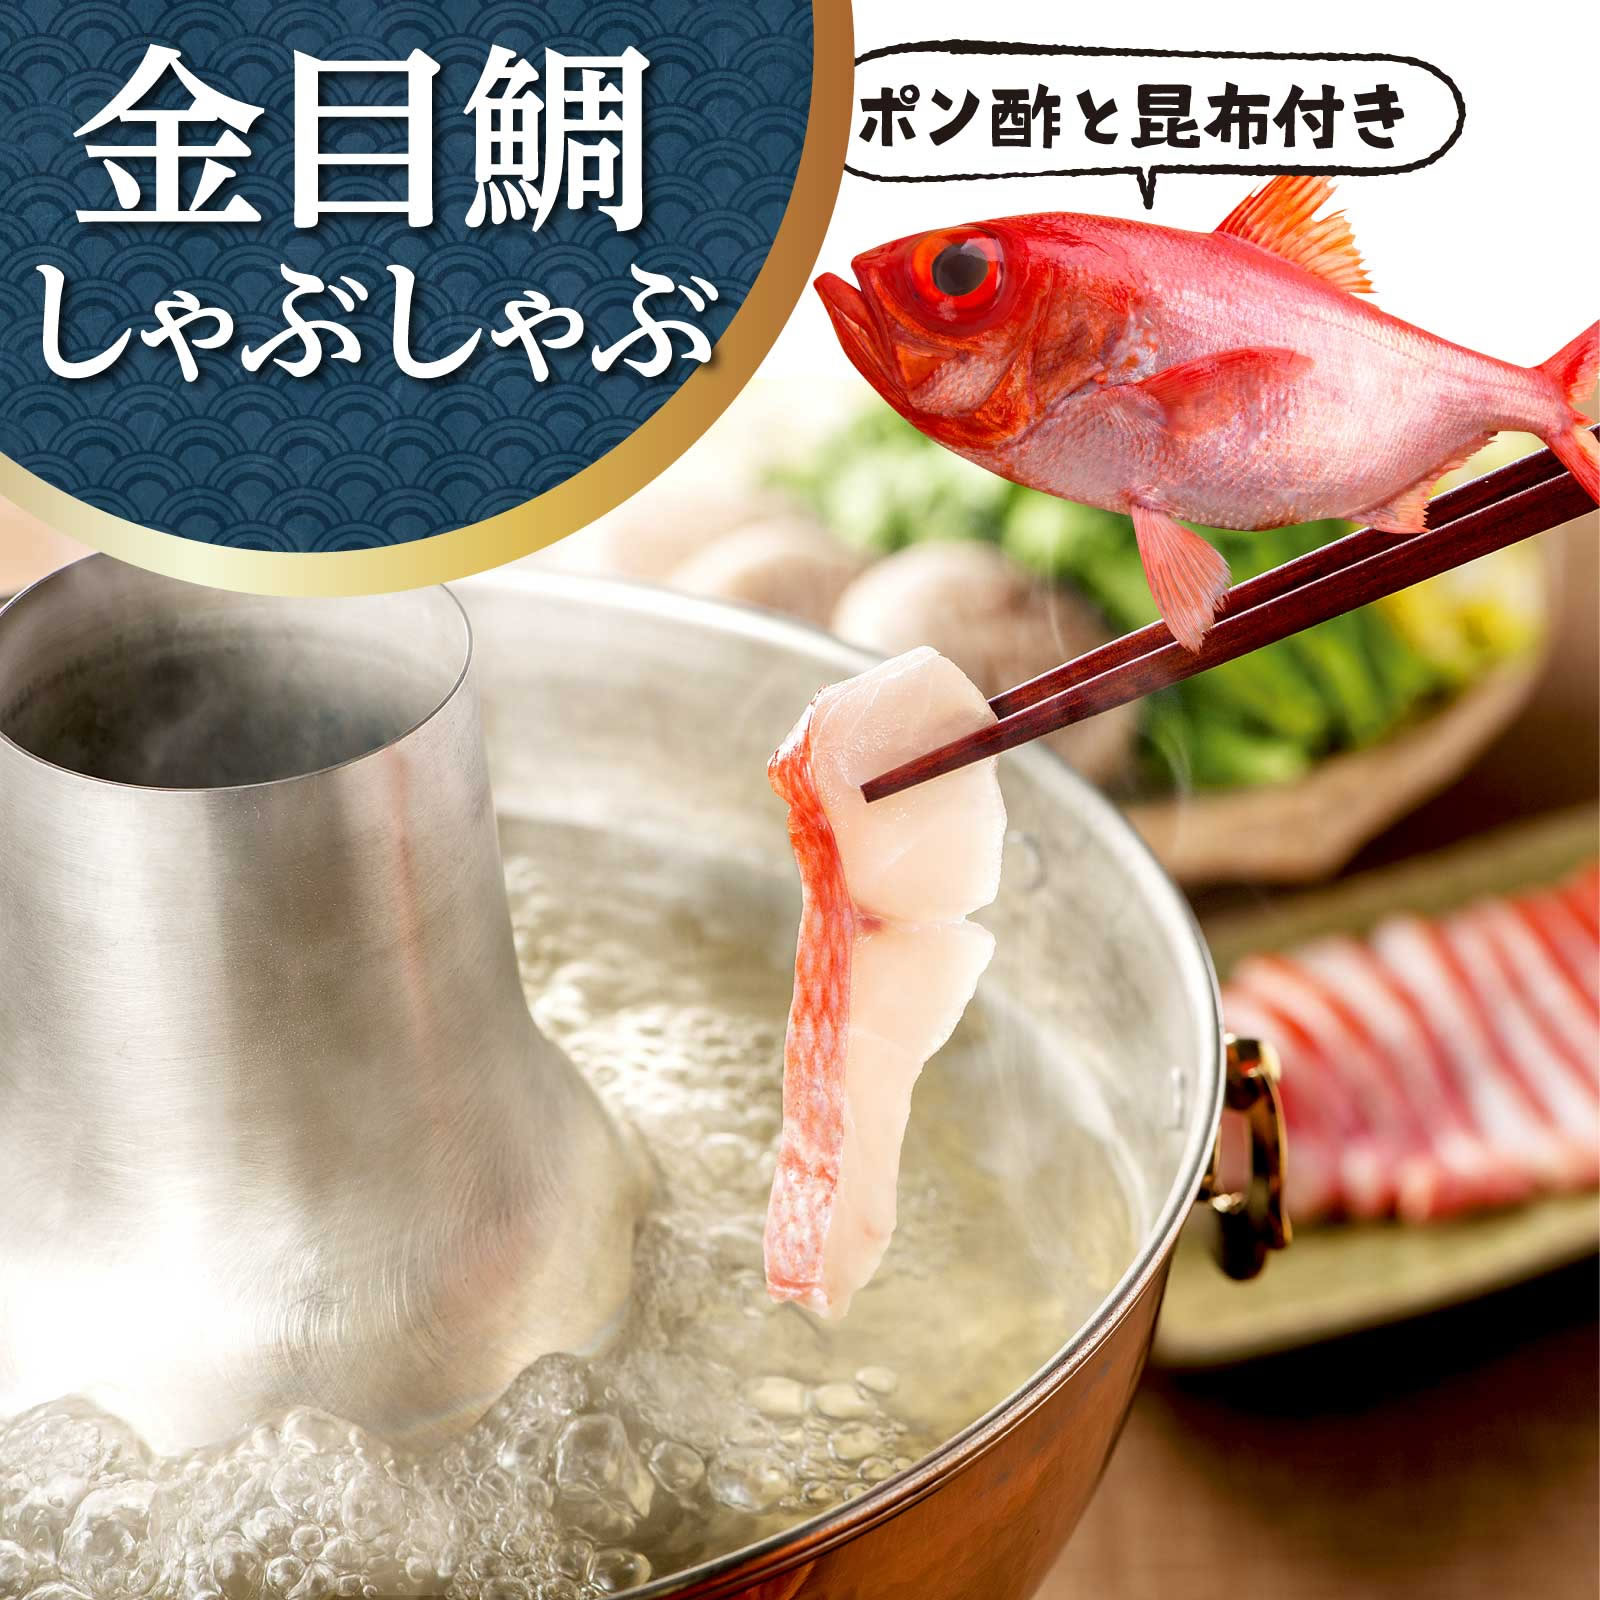 温めるだけ簡単ギフトセット煮魚 2種8枚金目鯛 鯖の味噌煮 【伊豆中】